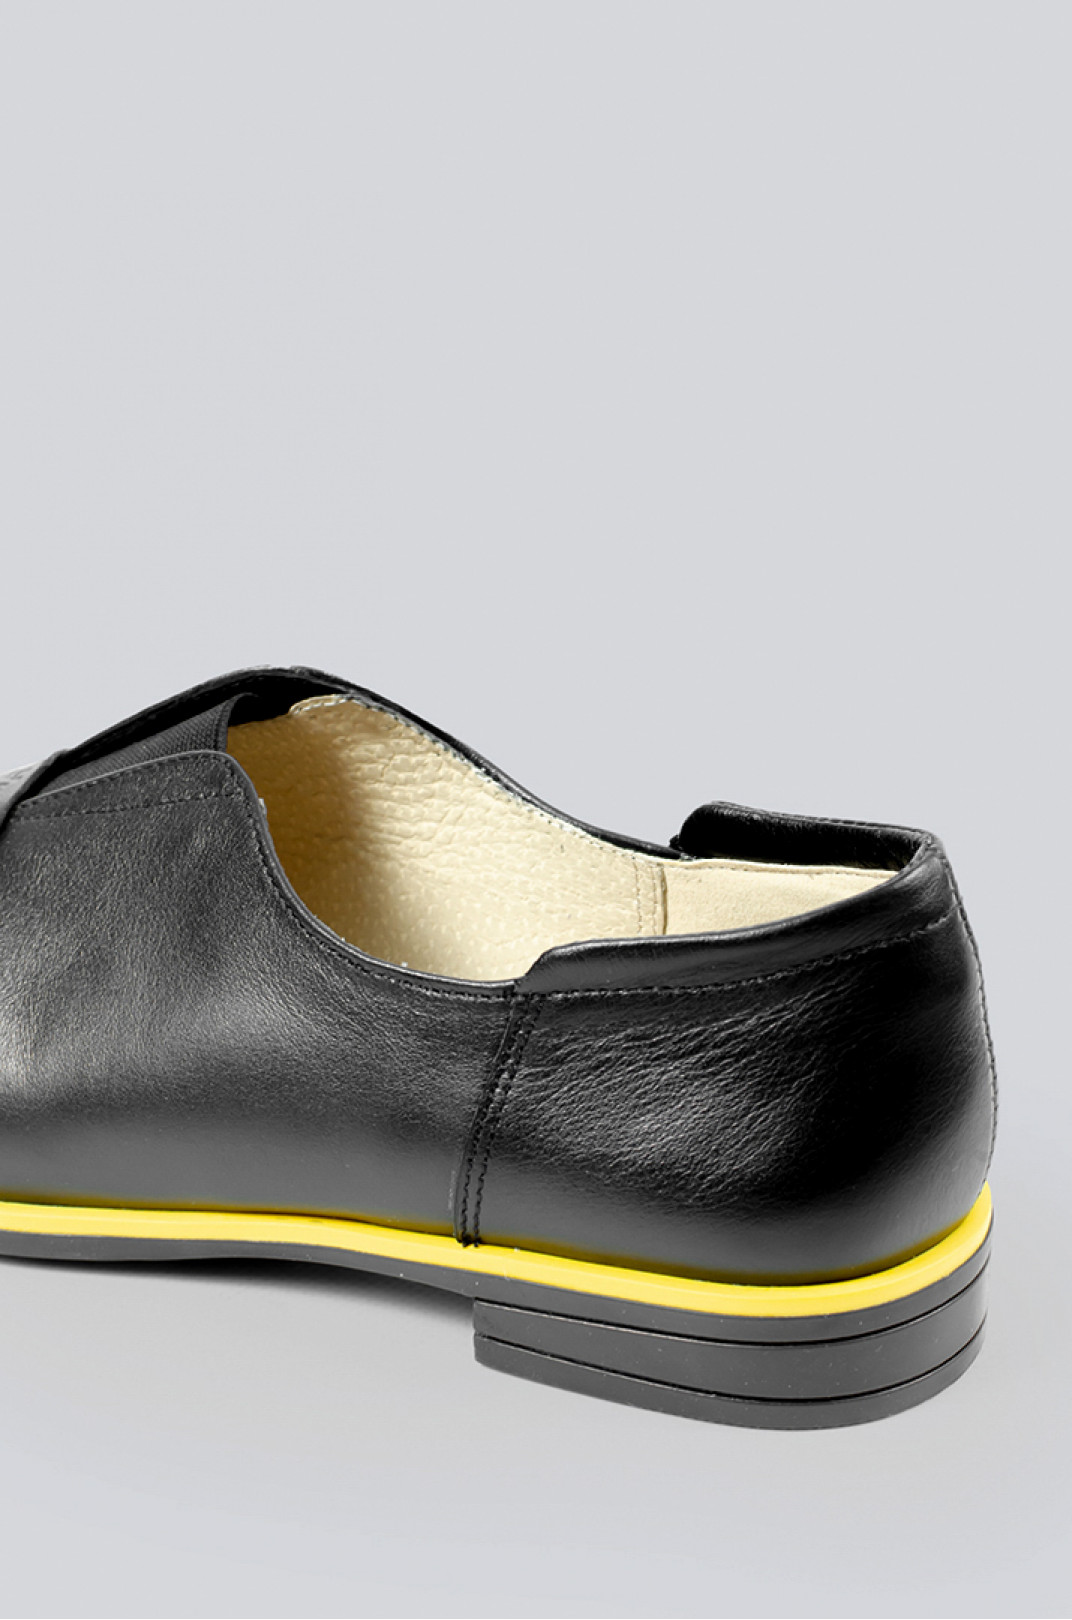 Туфлі чорні з жовтою каймою великих розмірів